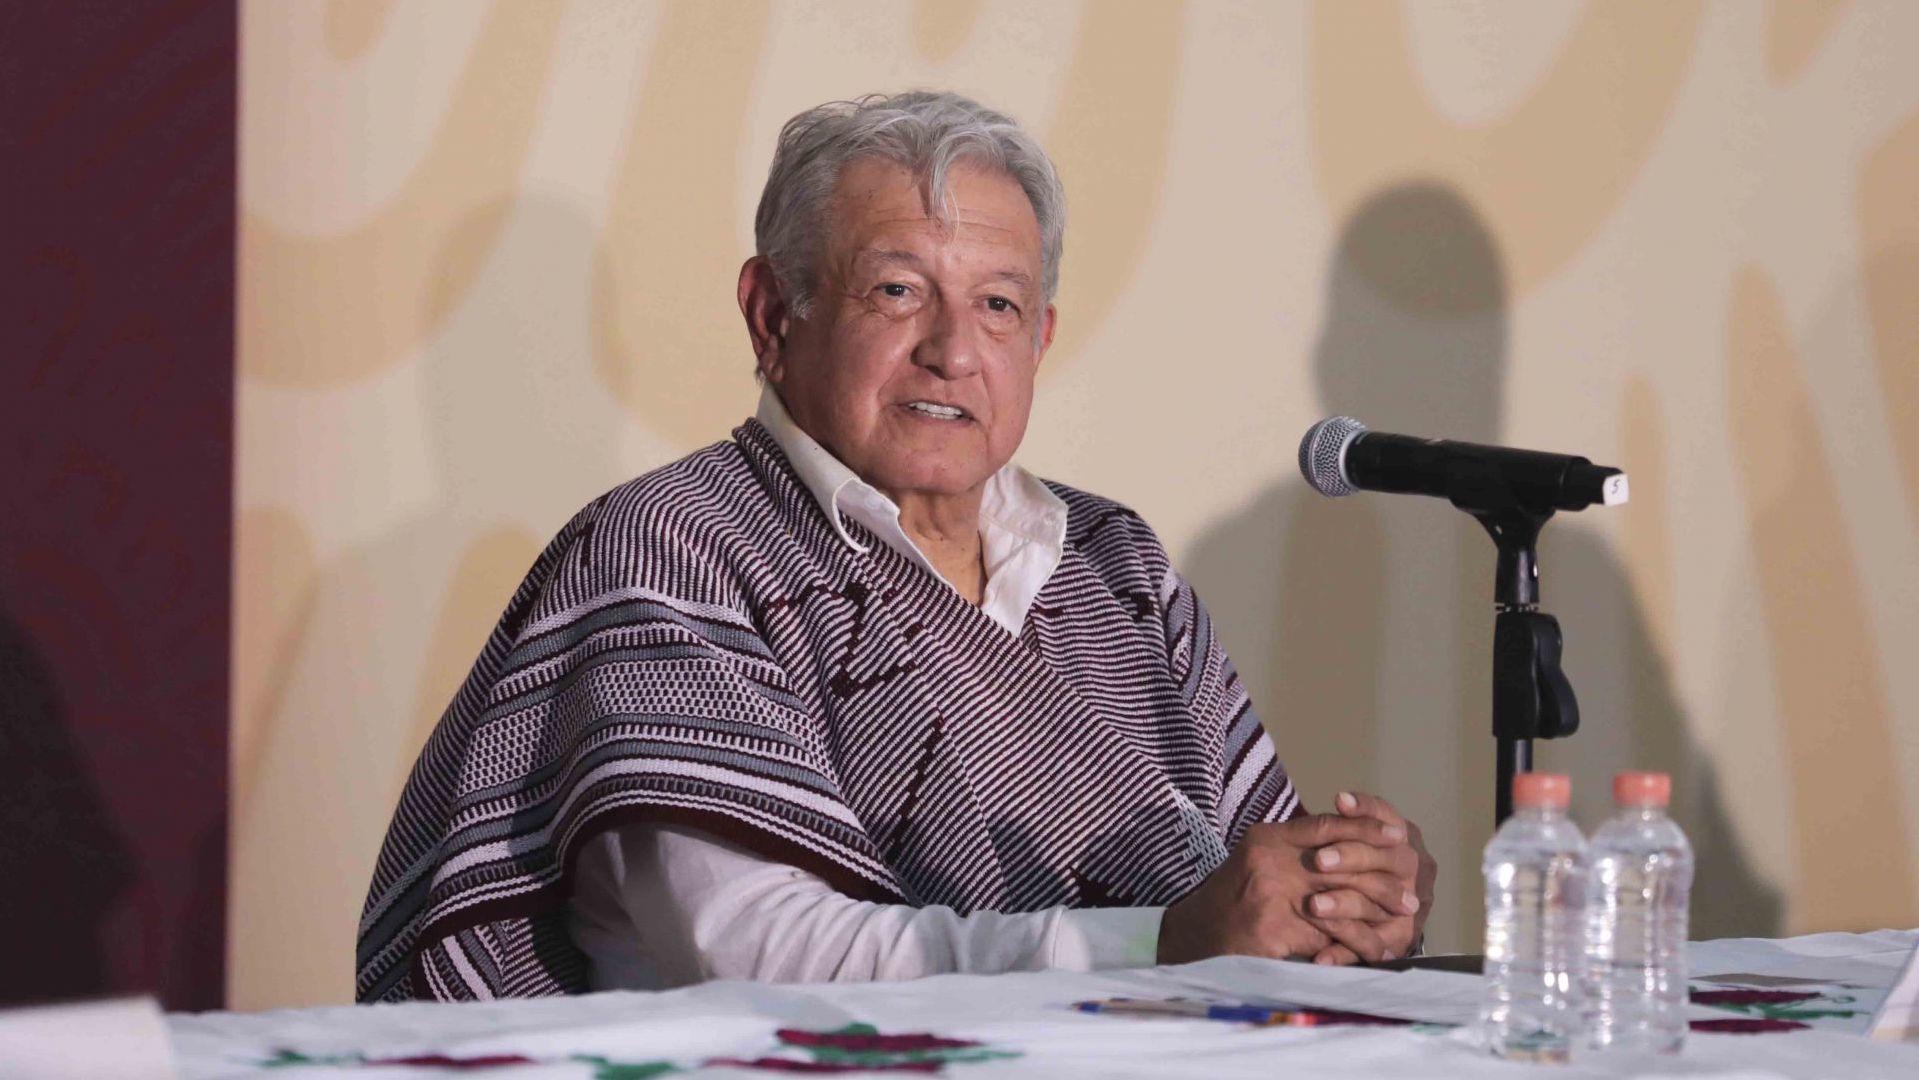 Venta y prostitución de niñas ‘no es la regla’ en Guerrero, señala López Obrador